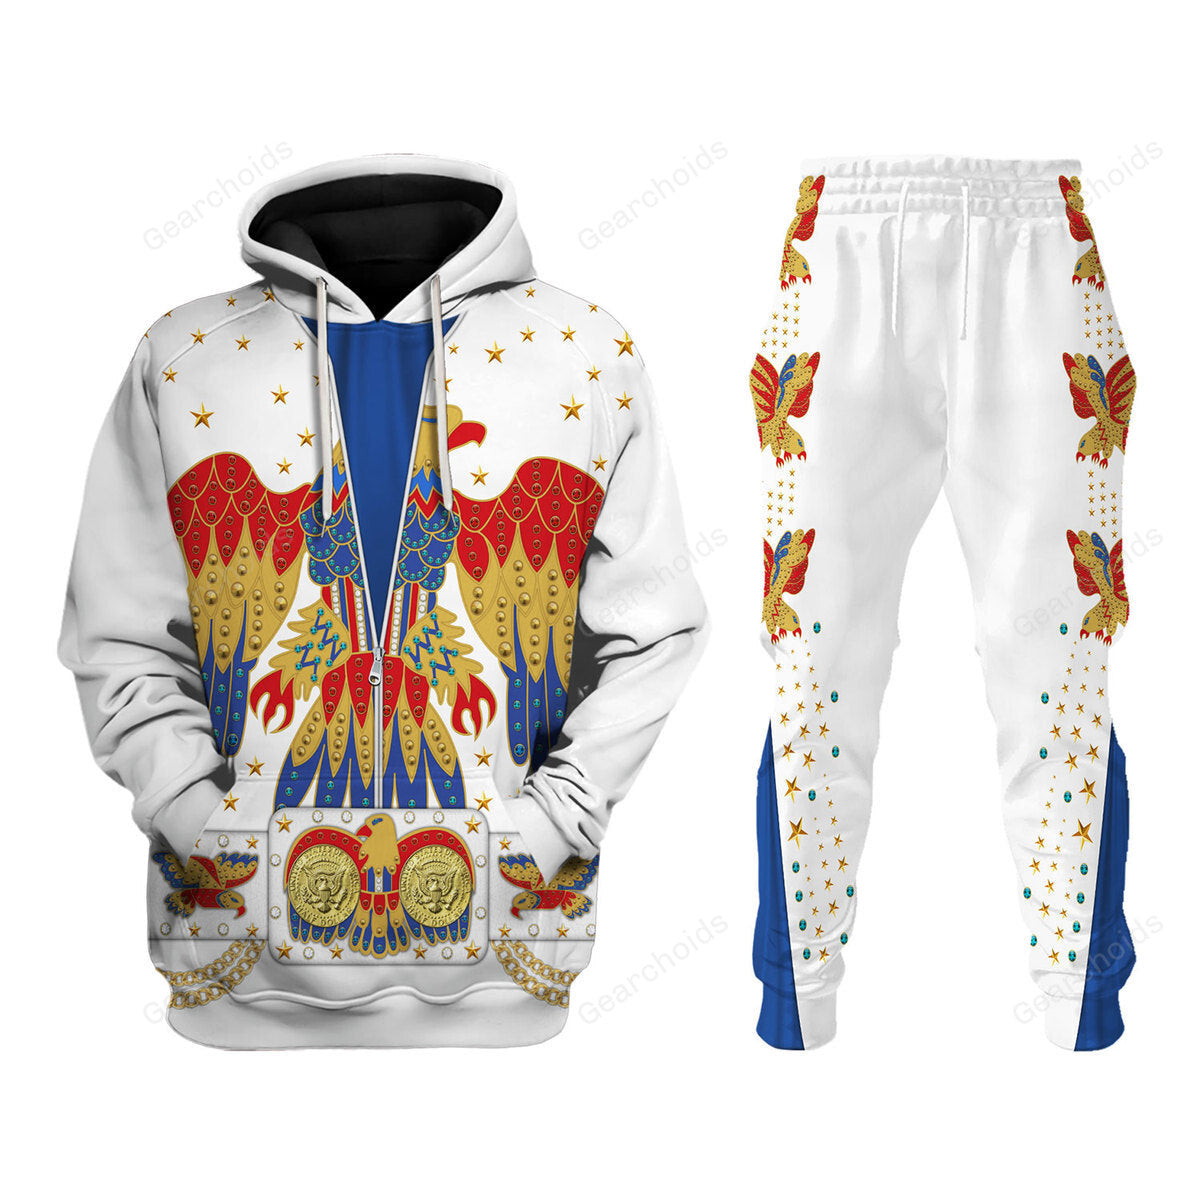 Elvis EAGLE - Costume Cosplay Hoodie Sweatshirt Sweatpants